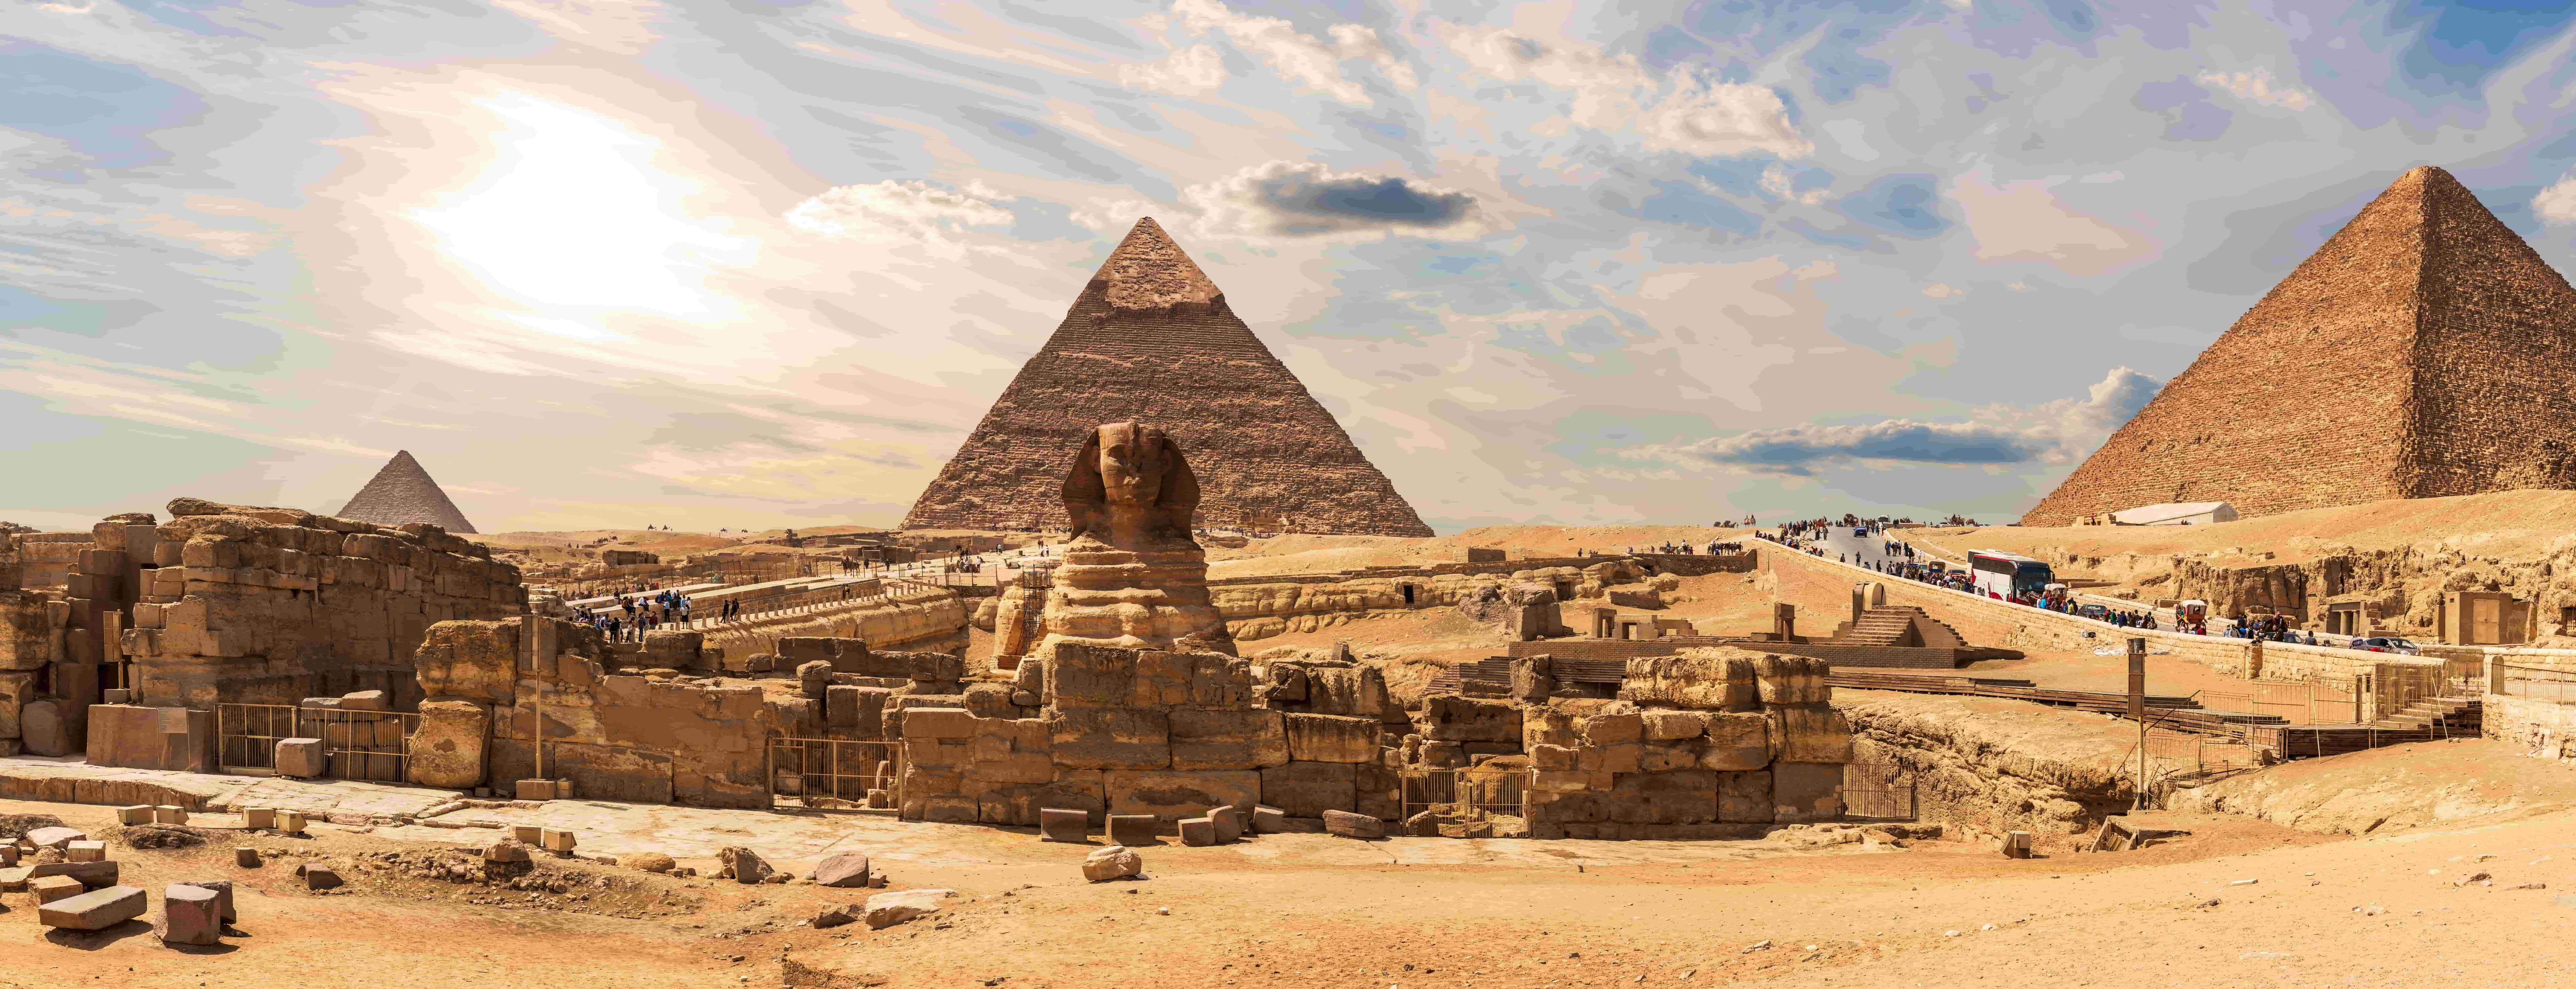 Egypte plateau des pyramides